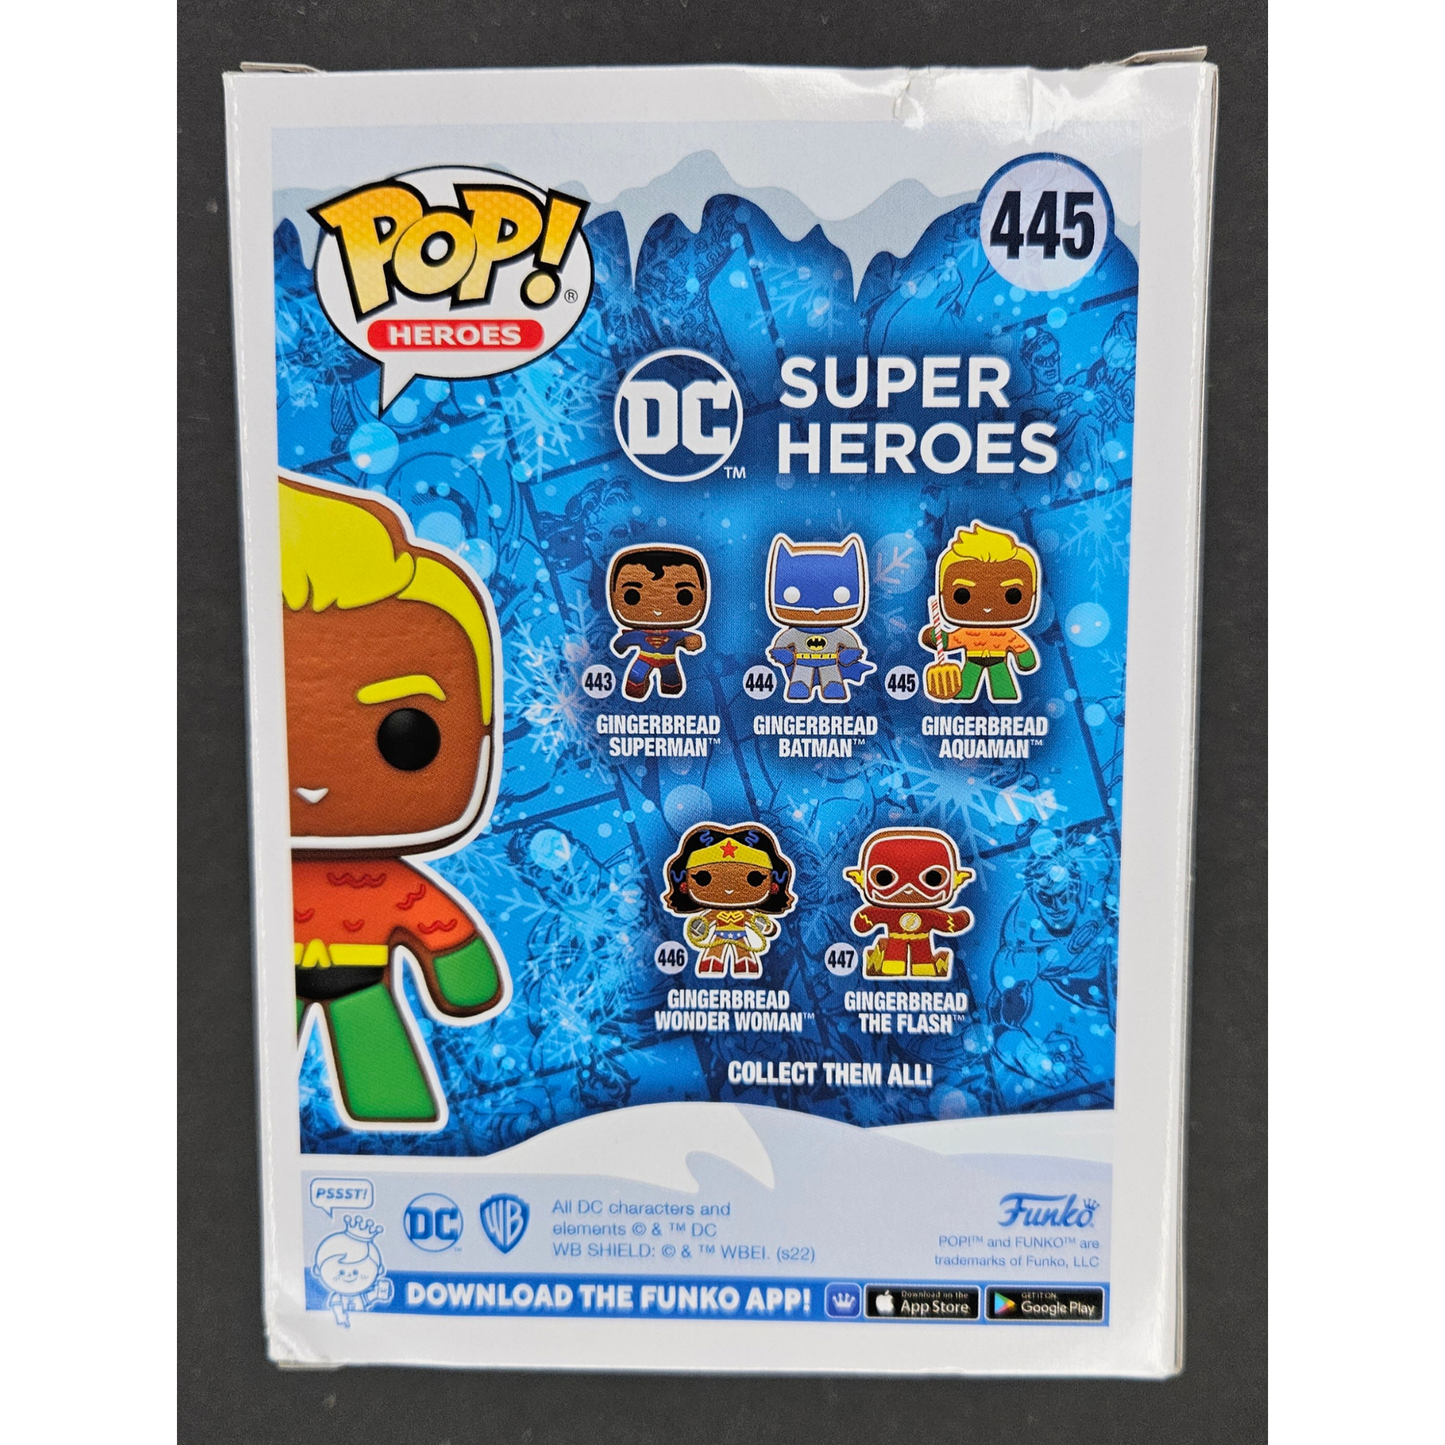 Gingerbread Aquaman Funko Pop! Heroes DC Super Heroes #445